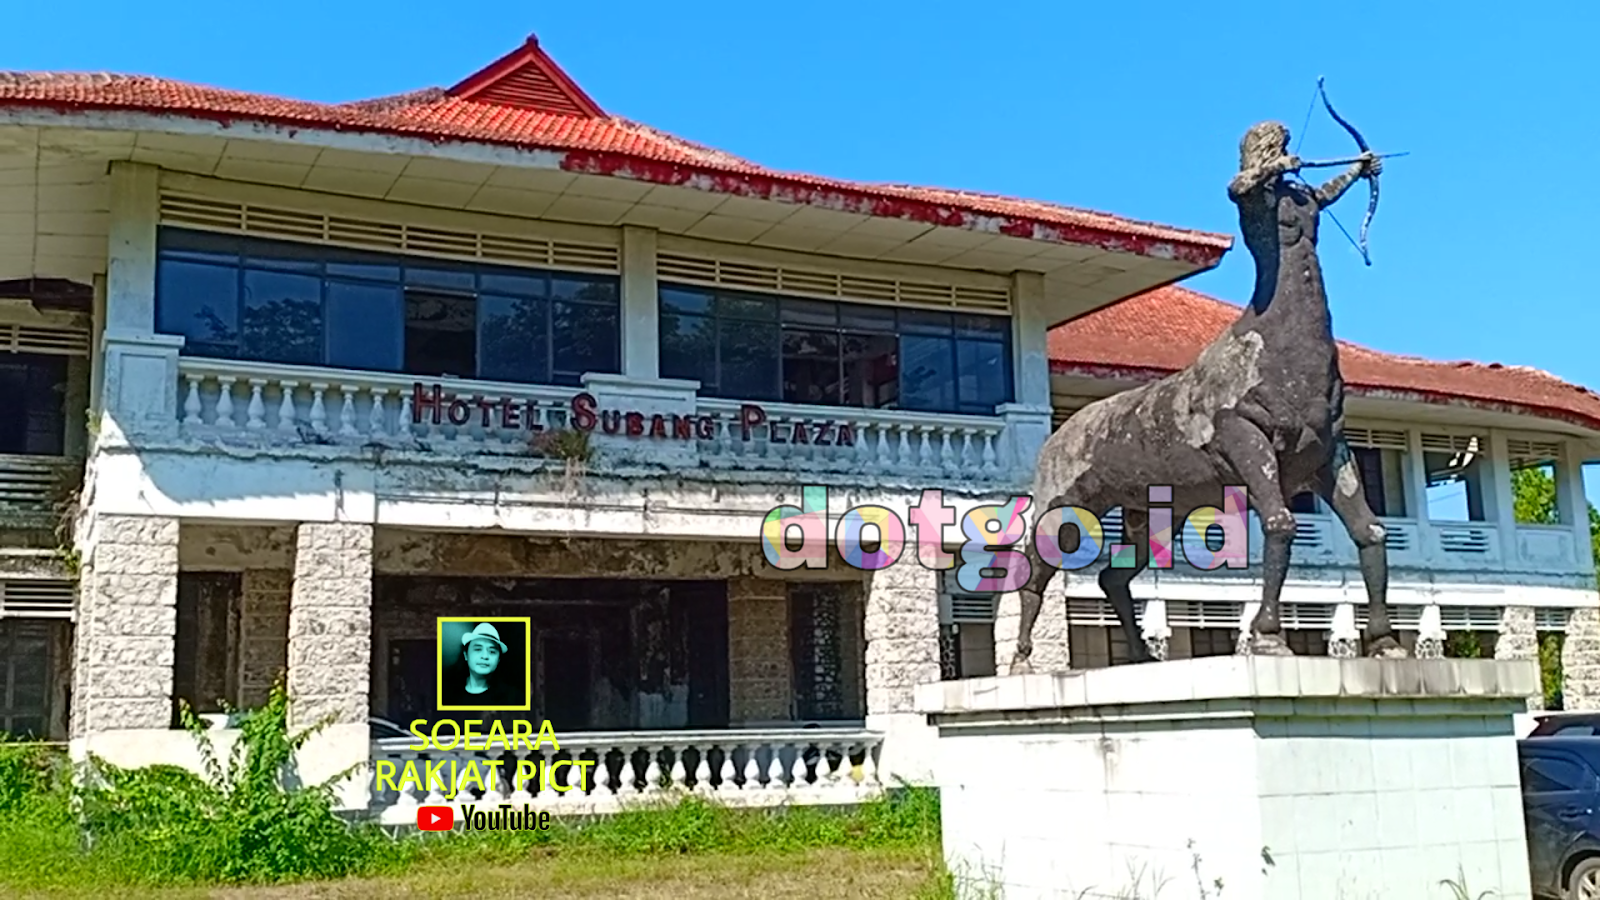 Tempat Angker Hotel Subang Plaza Sejarah Bangunan Kuno Era Kolonial Di Subang Jawa Barat Dotgo Id